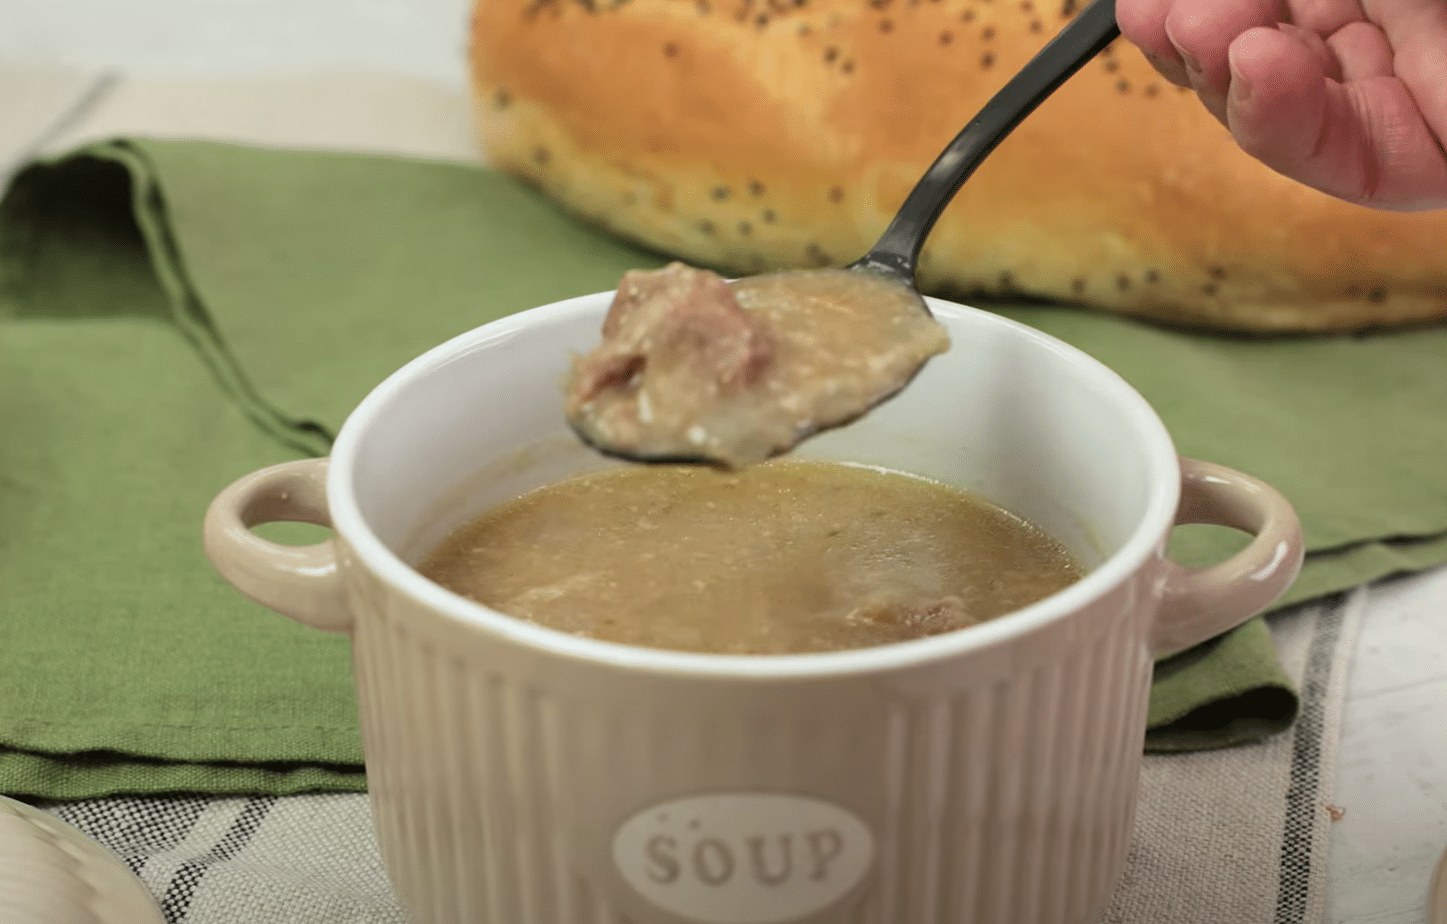 Νόστιμη σούπα με Μοσχάρι βραστό !